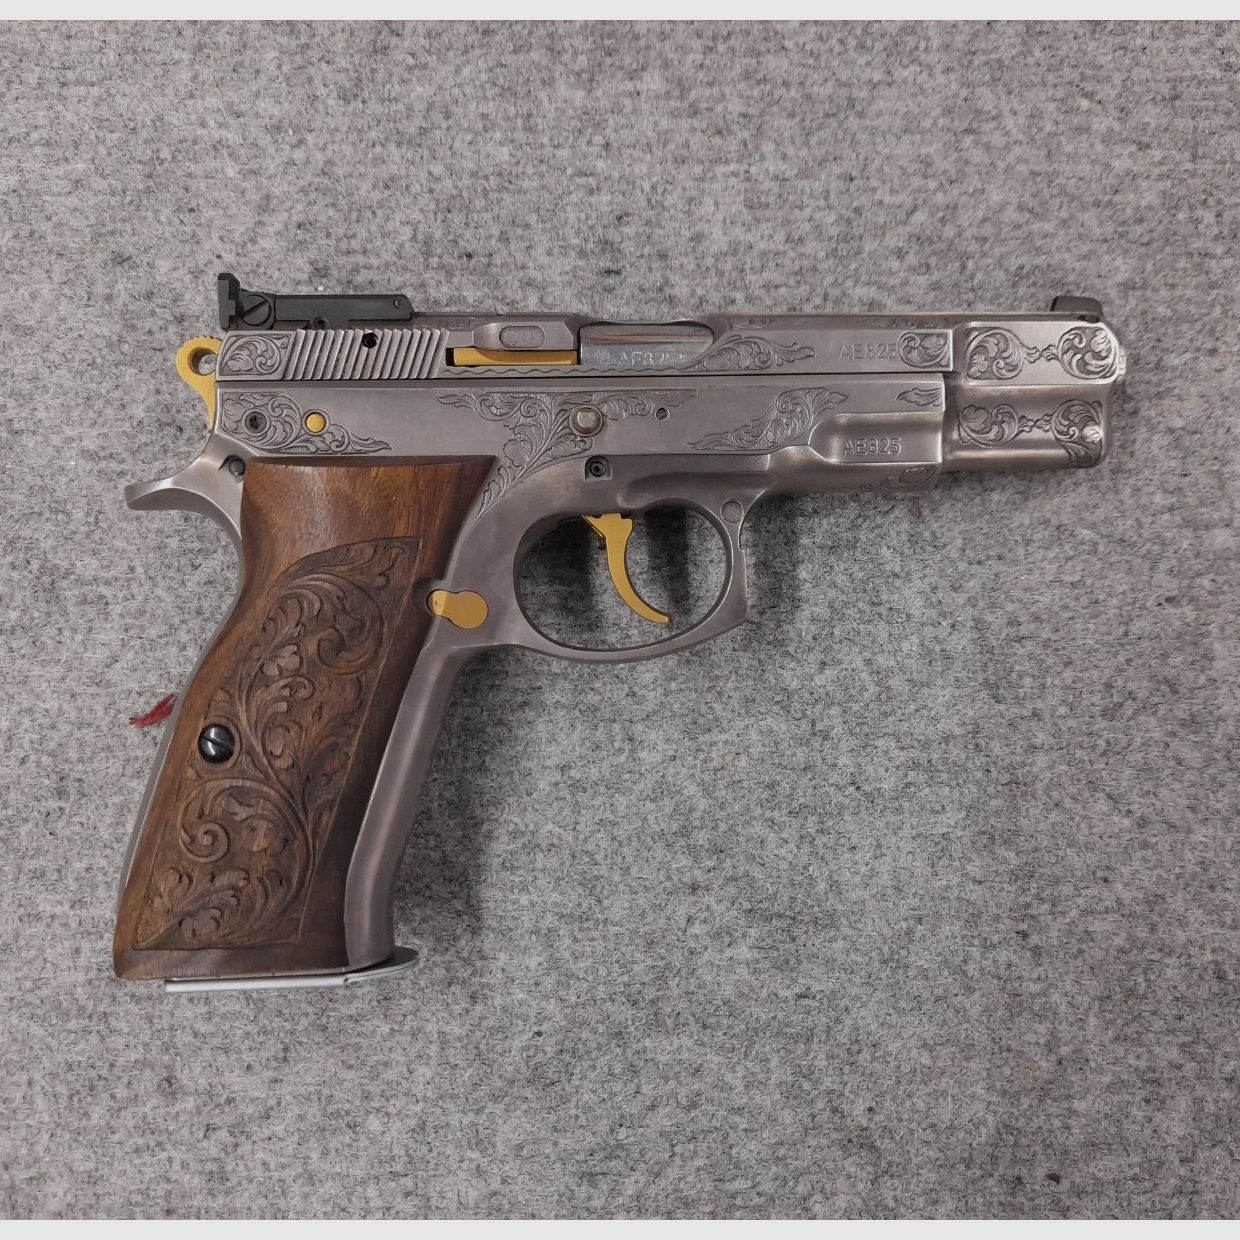 CZ 75B Brünner halbautomatische Pistole 9mm Luger silber, gold, graviert mit Holzgriffschalen